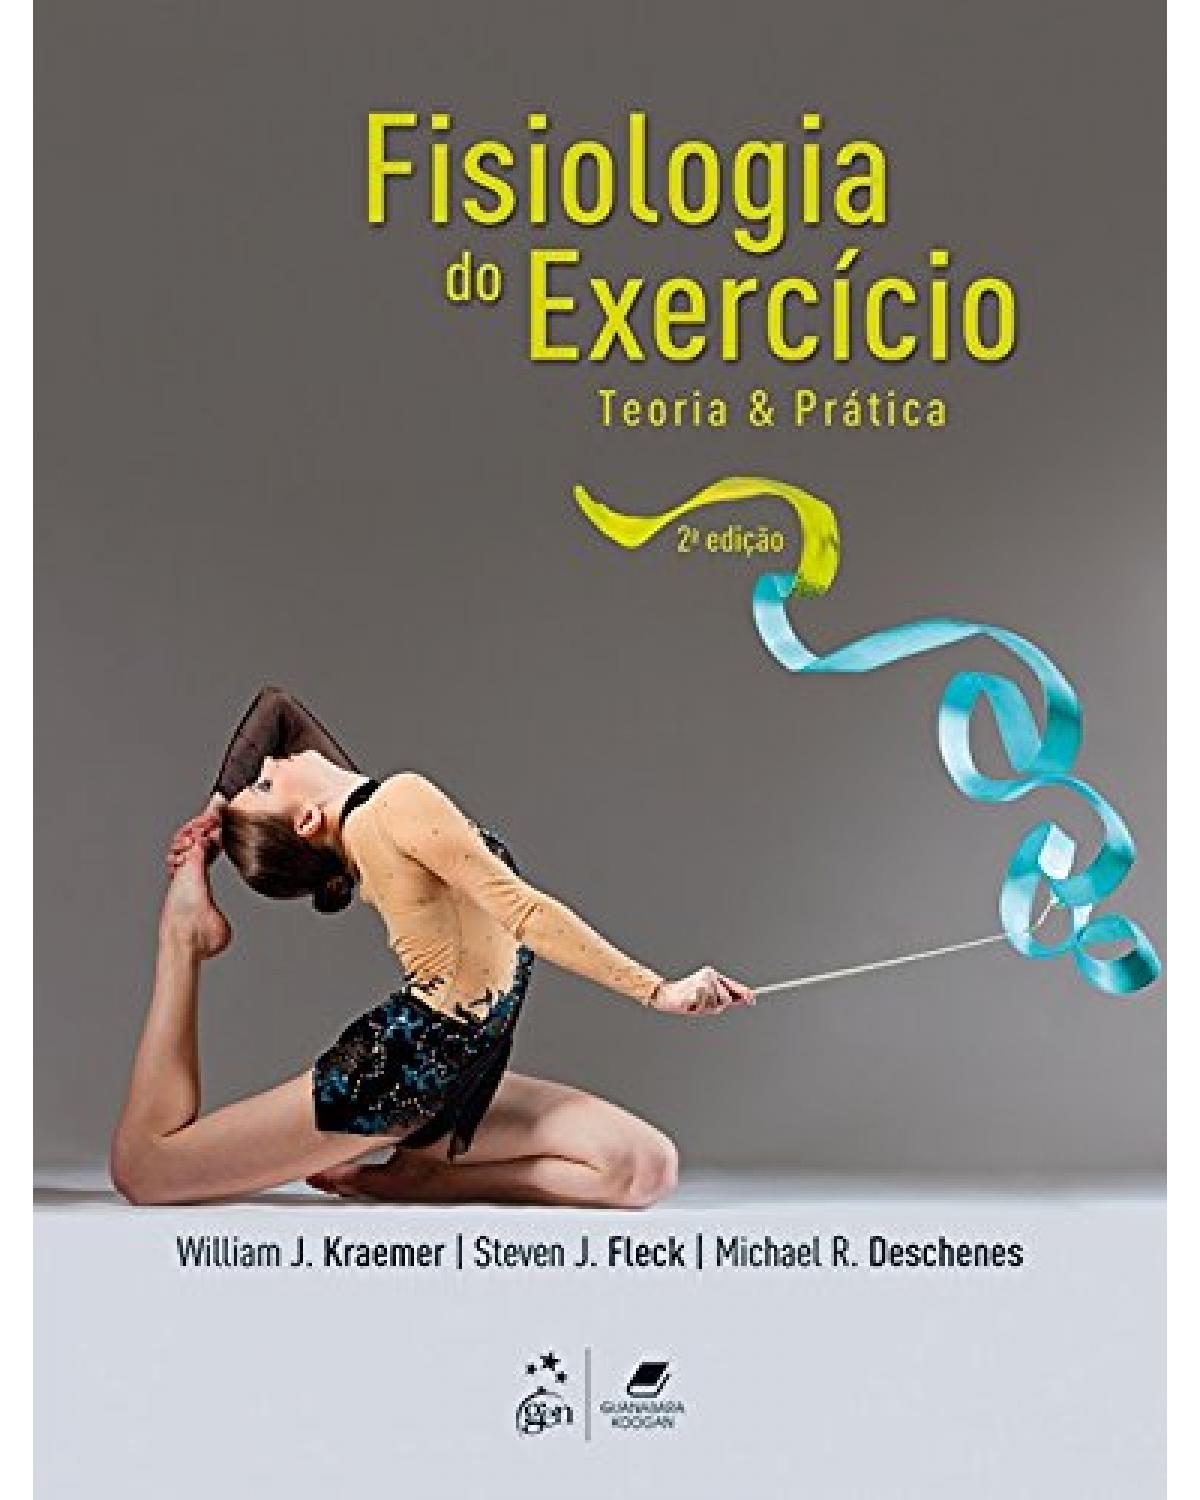 Fisiologia do exercício - Teoria e prática - 2ª Edição | 2016